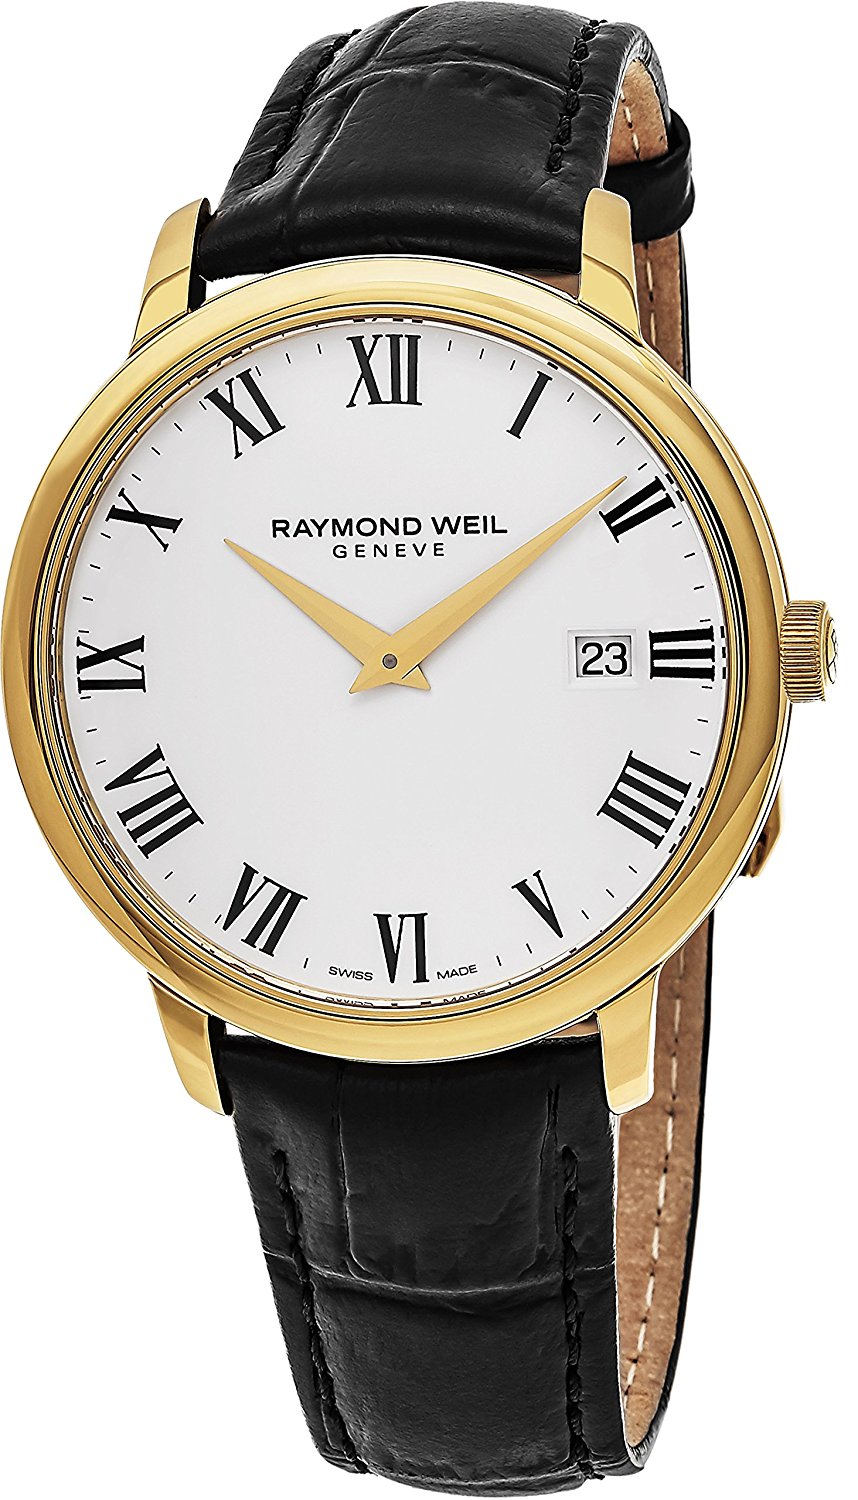 Raymond weil мужские часы. Raymond Weil часы. Raymond Weil часы мужские. Reymond Weil часы мужские. Наручные часы Raymond Weil 2715-BKC-20021.